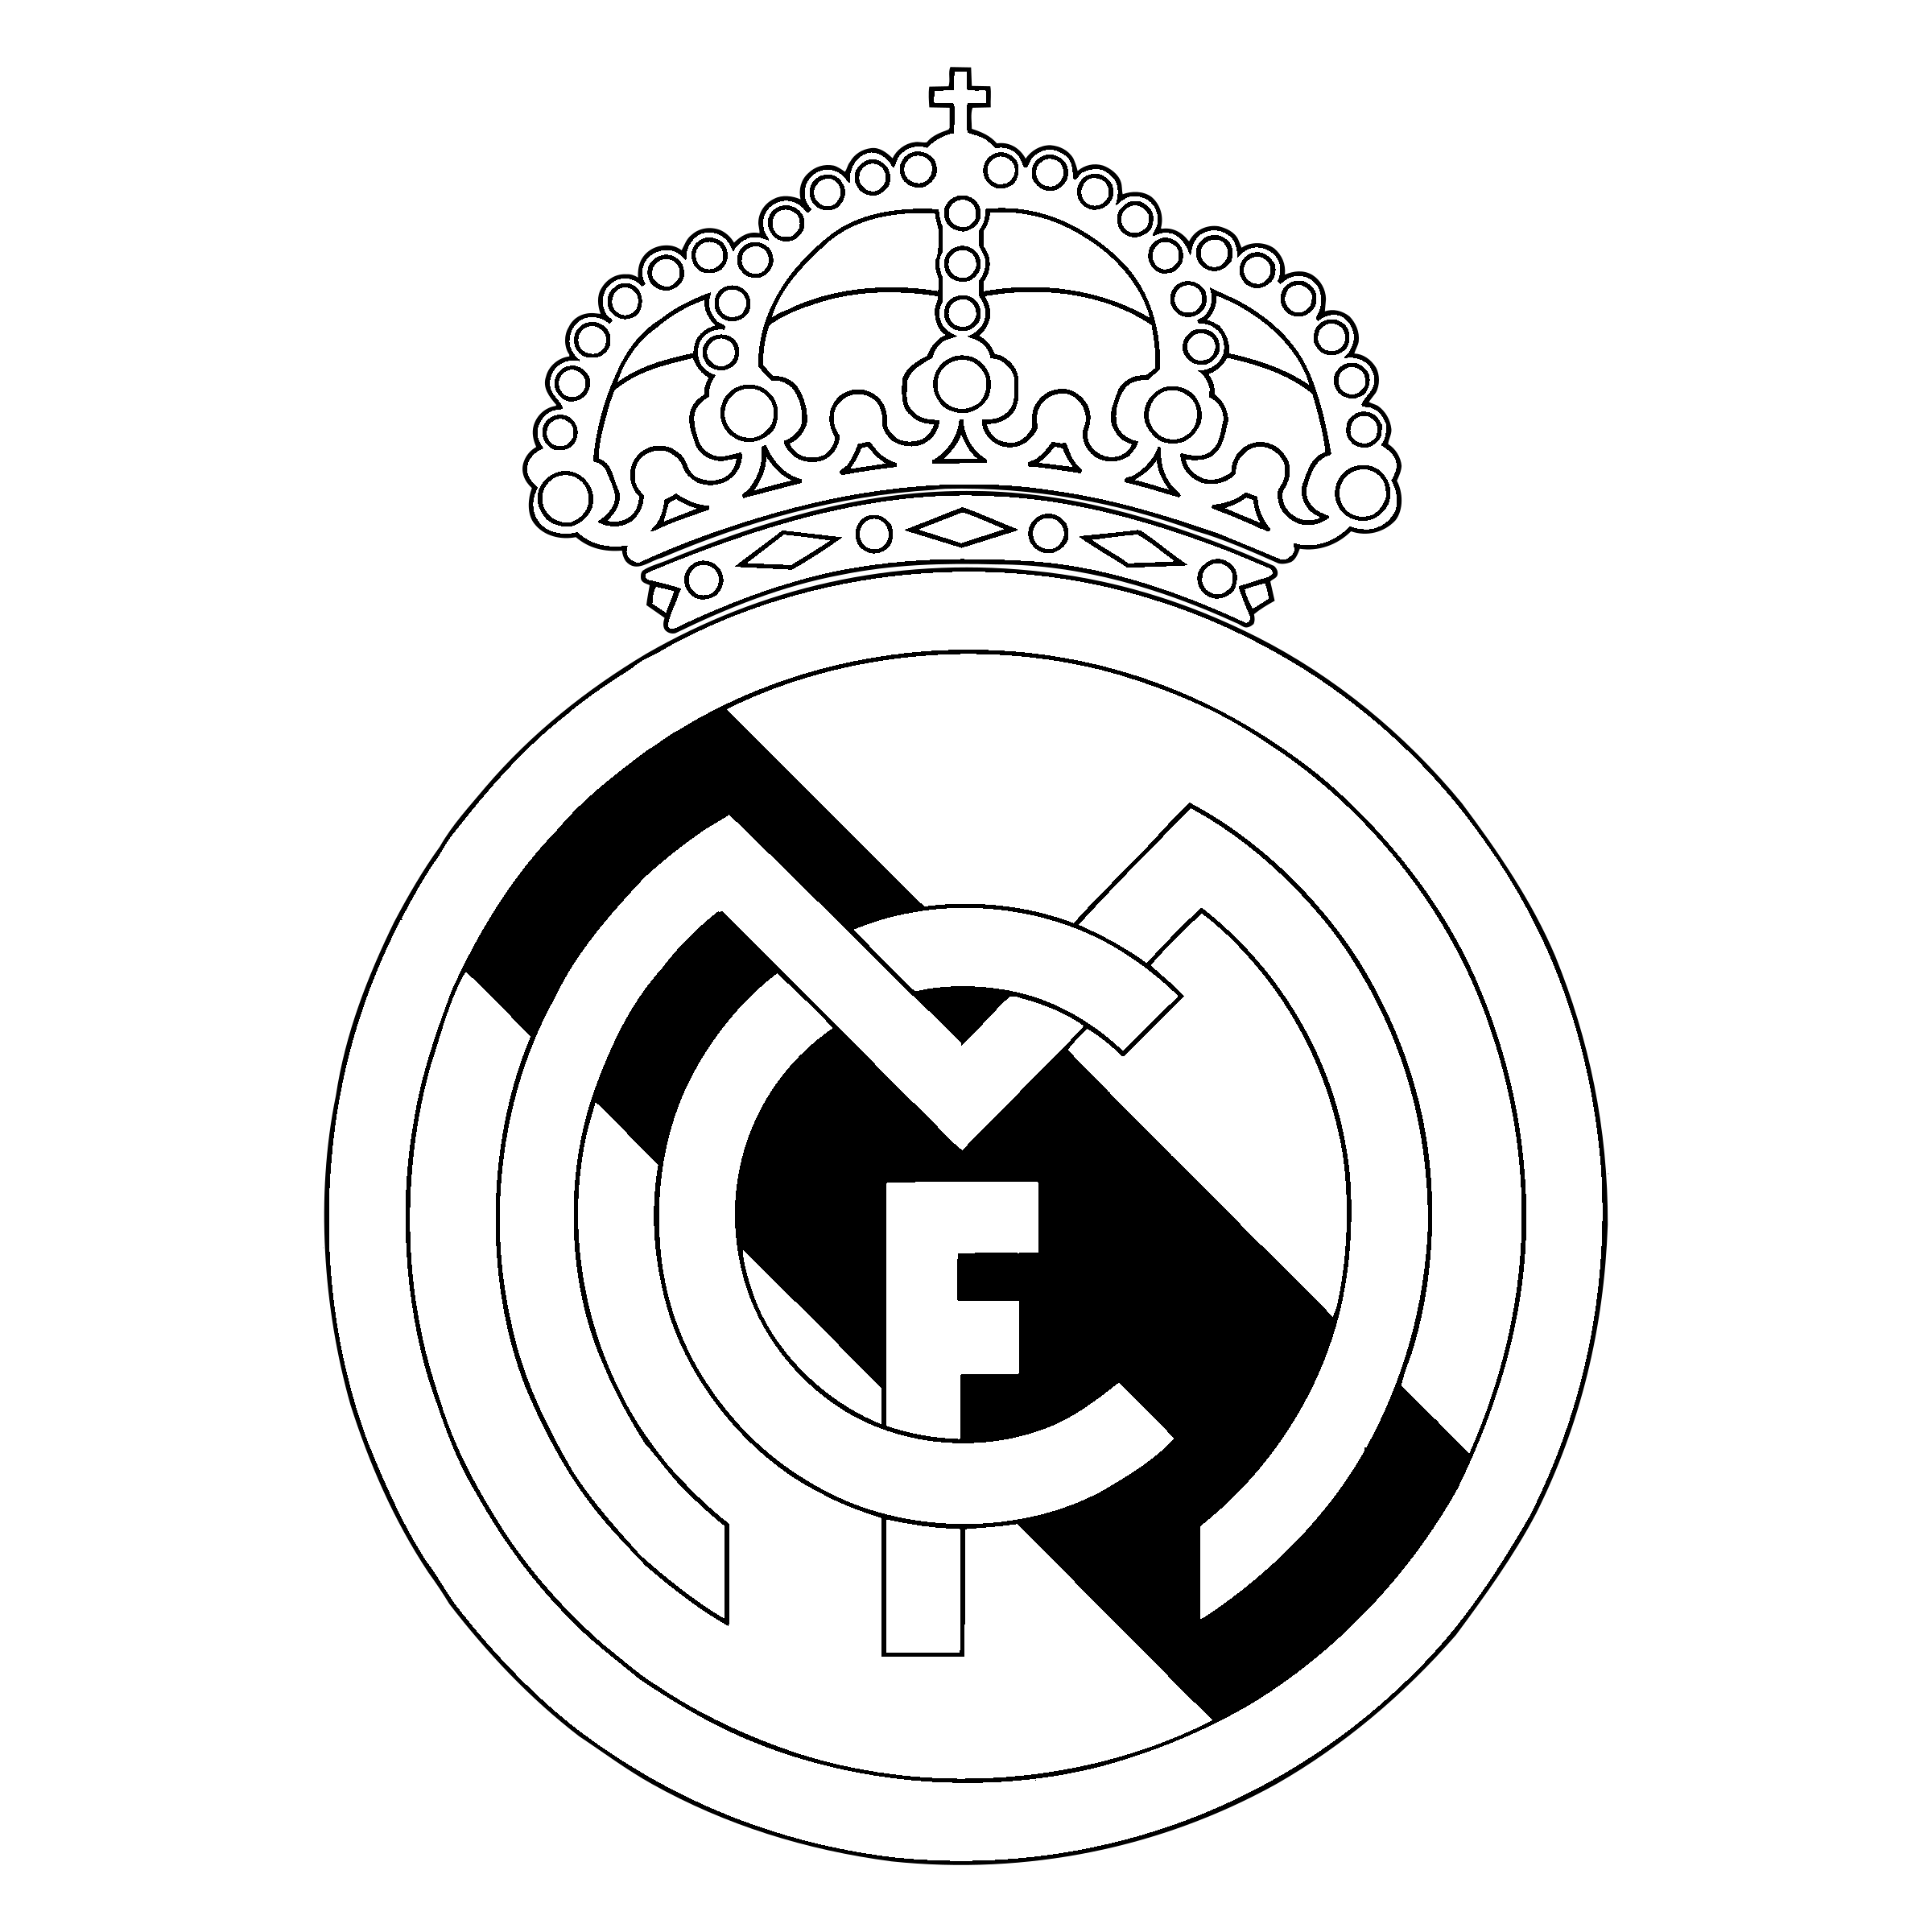 Футбольный клуб Реал Мадрид лого. Значок футбольной команды Реал Мадрид. Реал Мадрид герб футбольного клуба. ФК Реал Мадрид PNG.